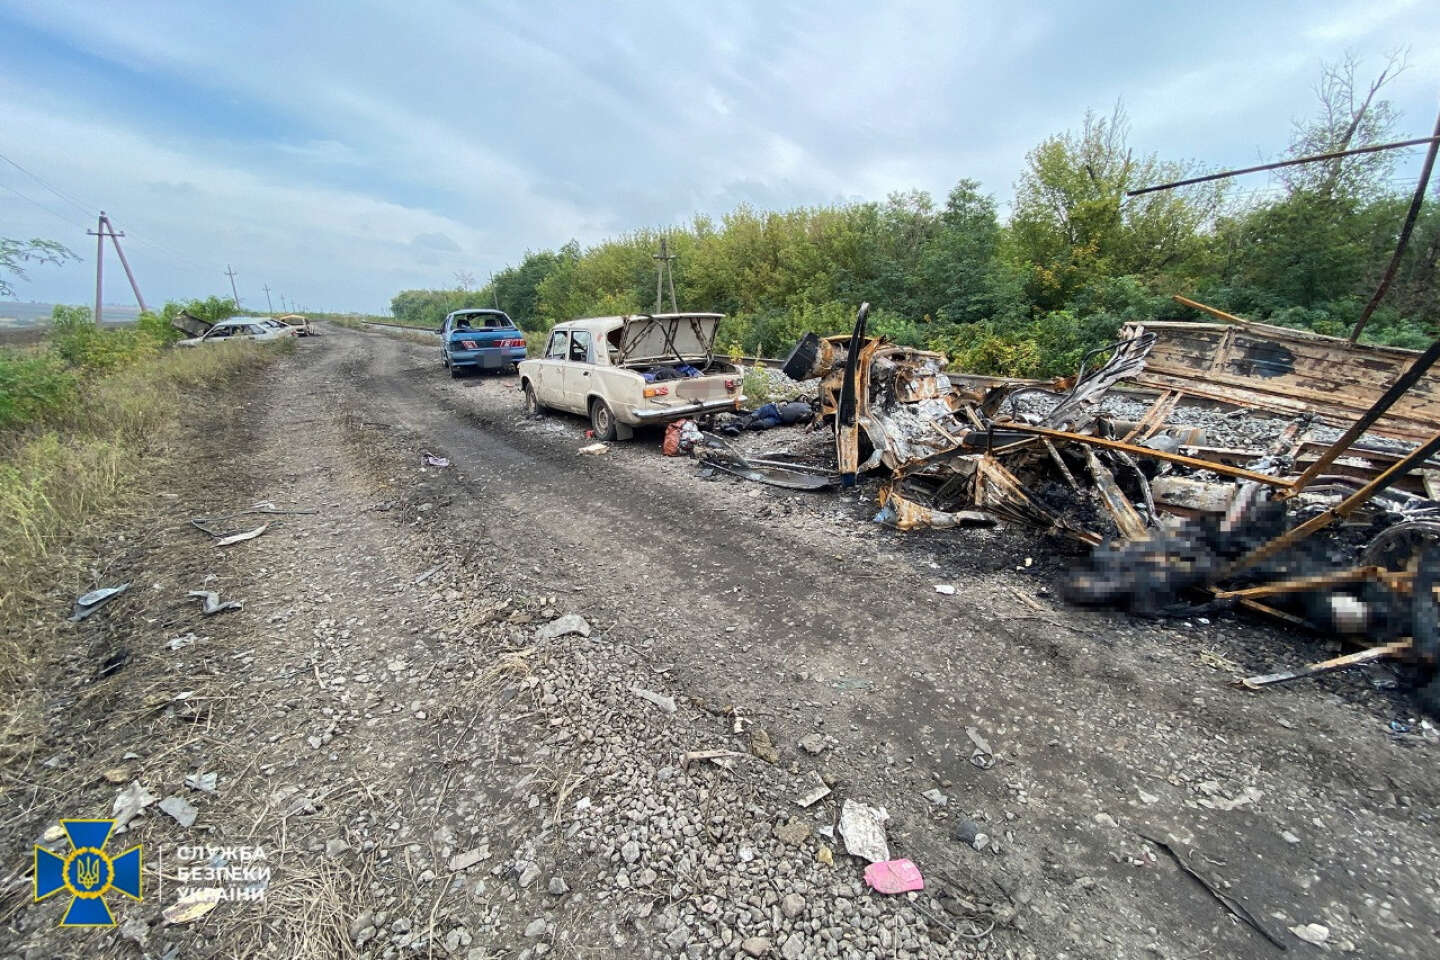 Près de Koupiansk, vingt-quatre civils ukrainiens ont été retrouvés tués par balle dans leur voiture, selon le gouverneur régional